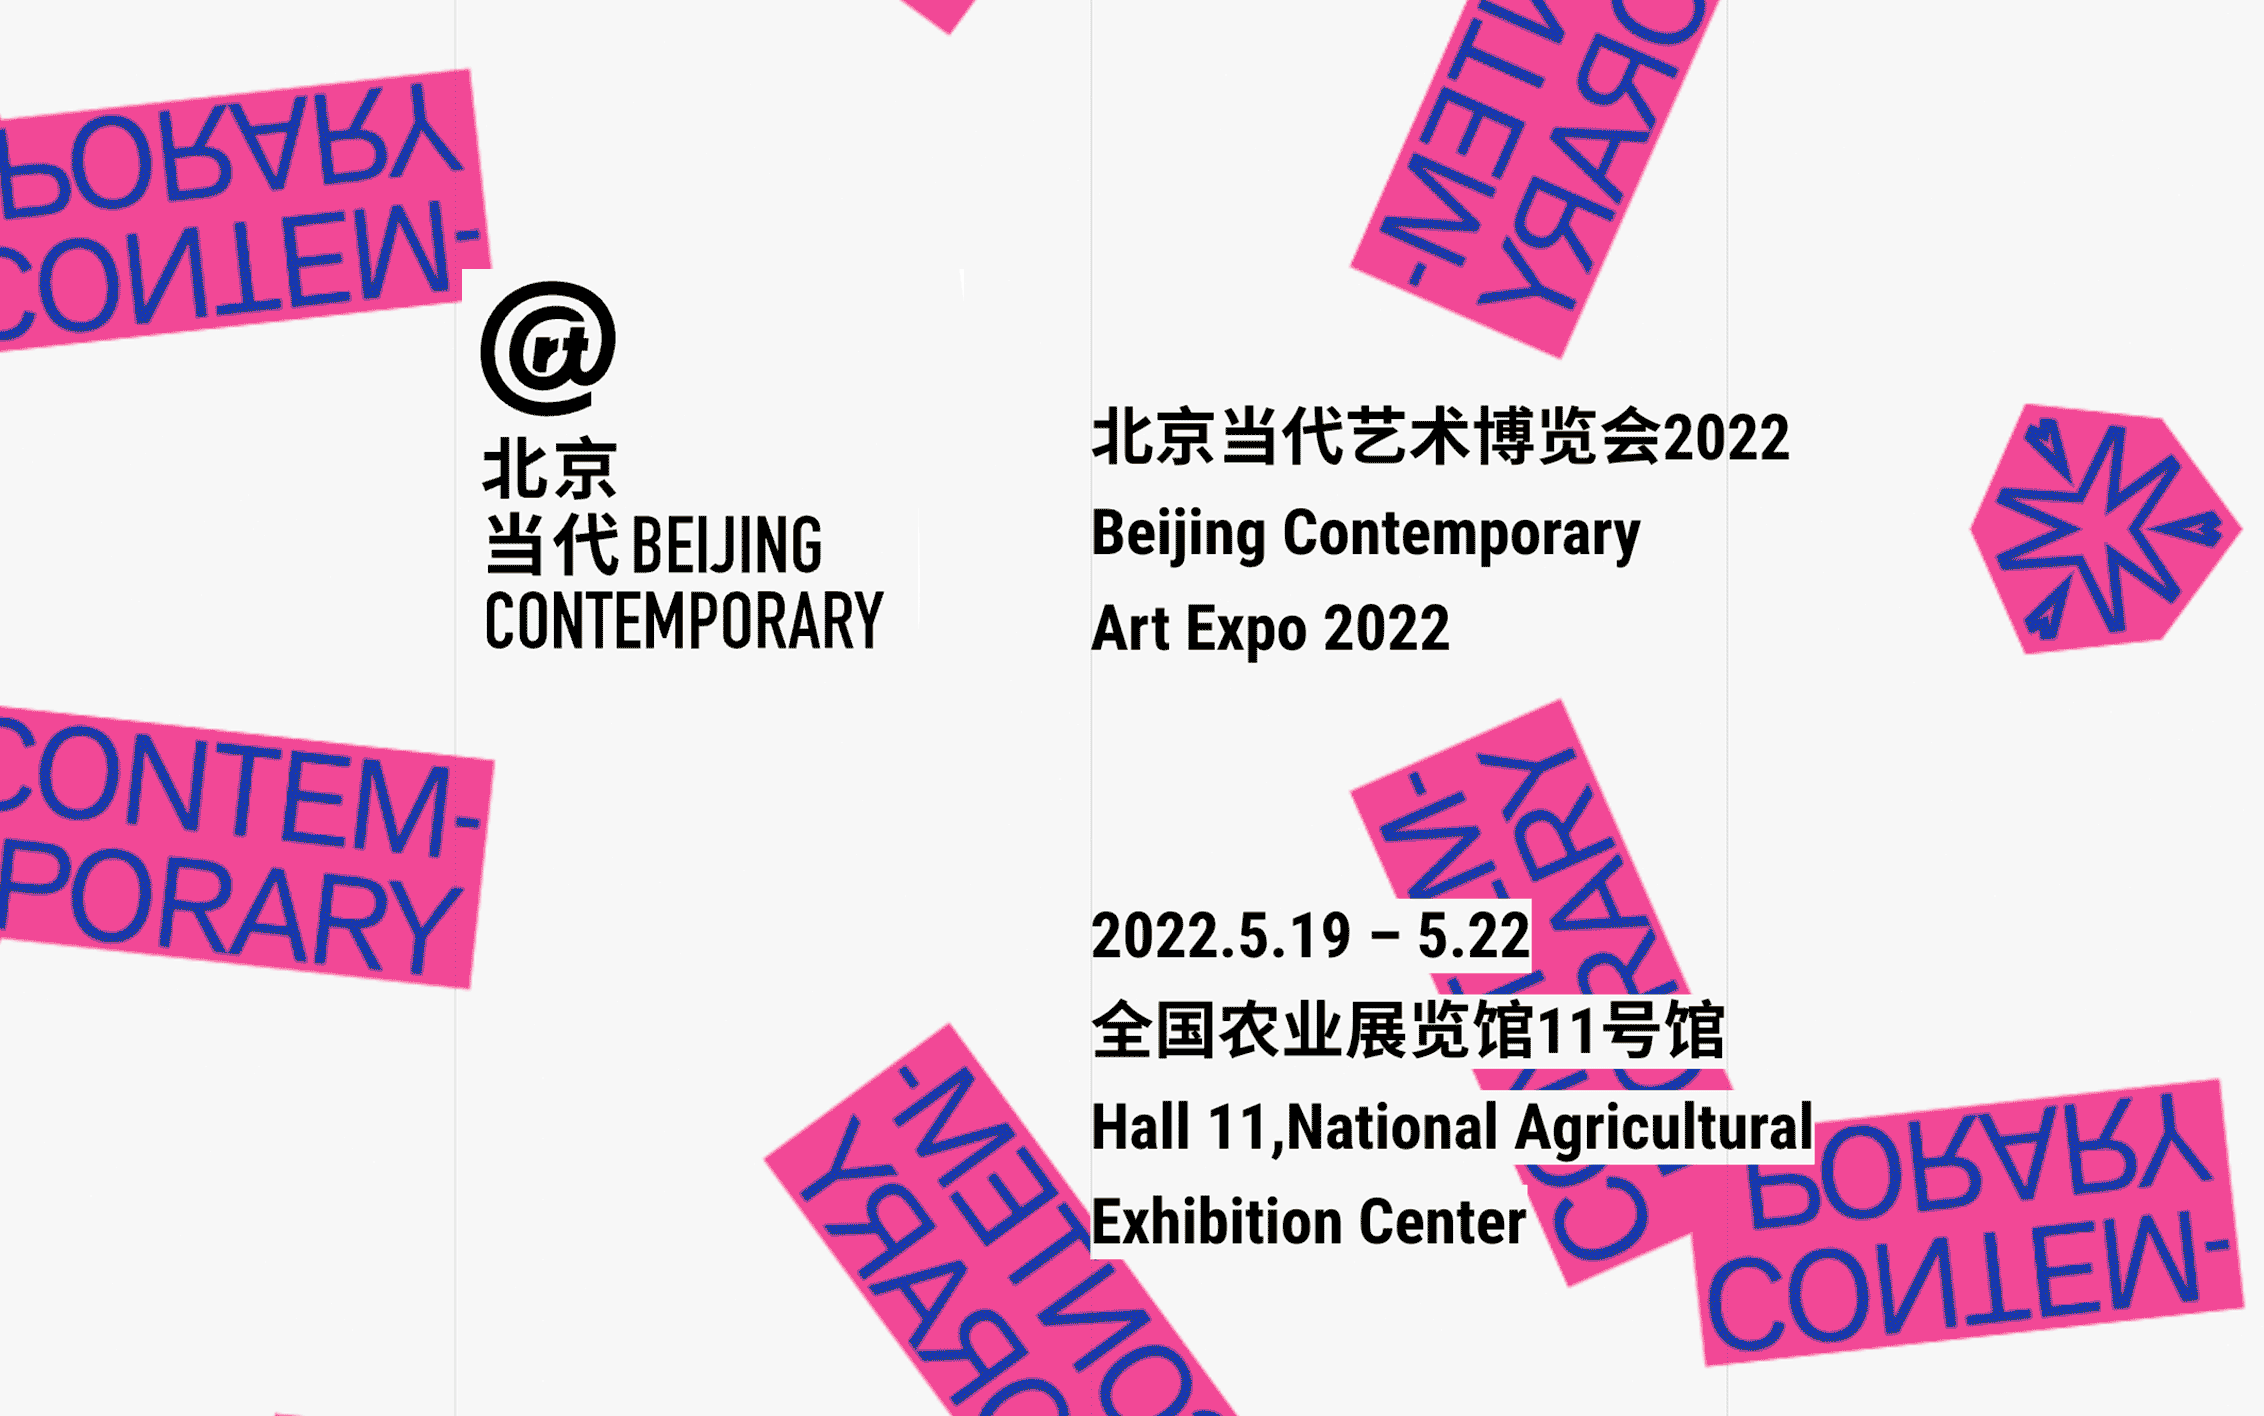 Contemporary art art fair, Beijing Contemporary Art Expo 2022 at de Sarthe, de Sarthe, Hong Kong, SAR, China